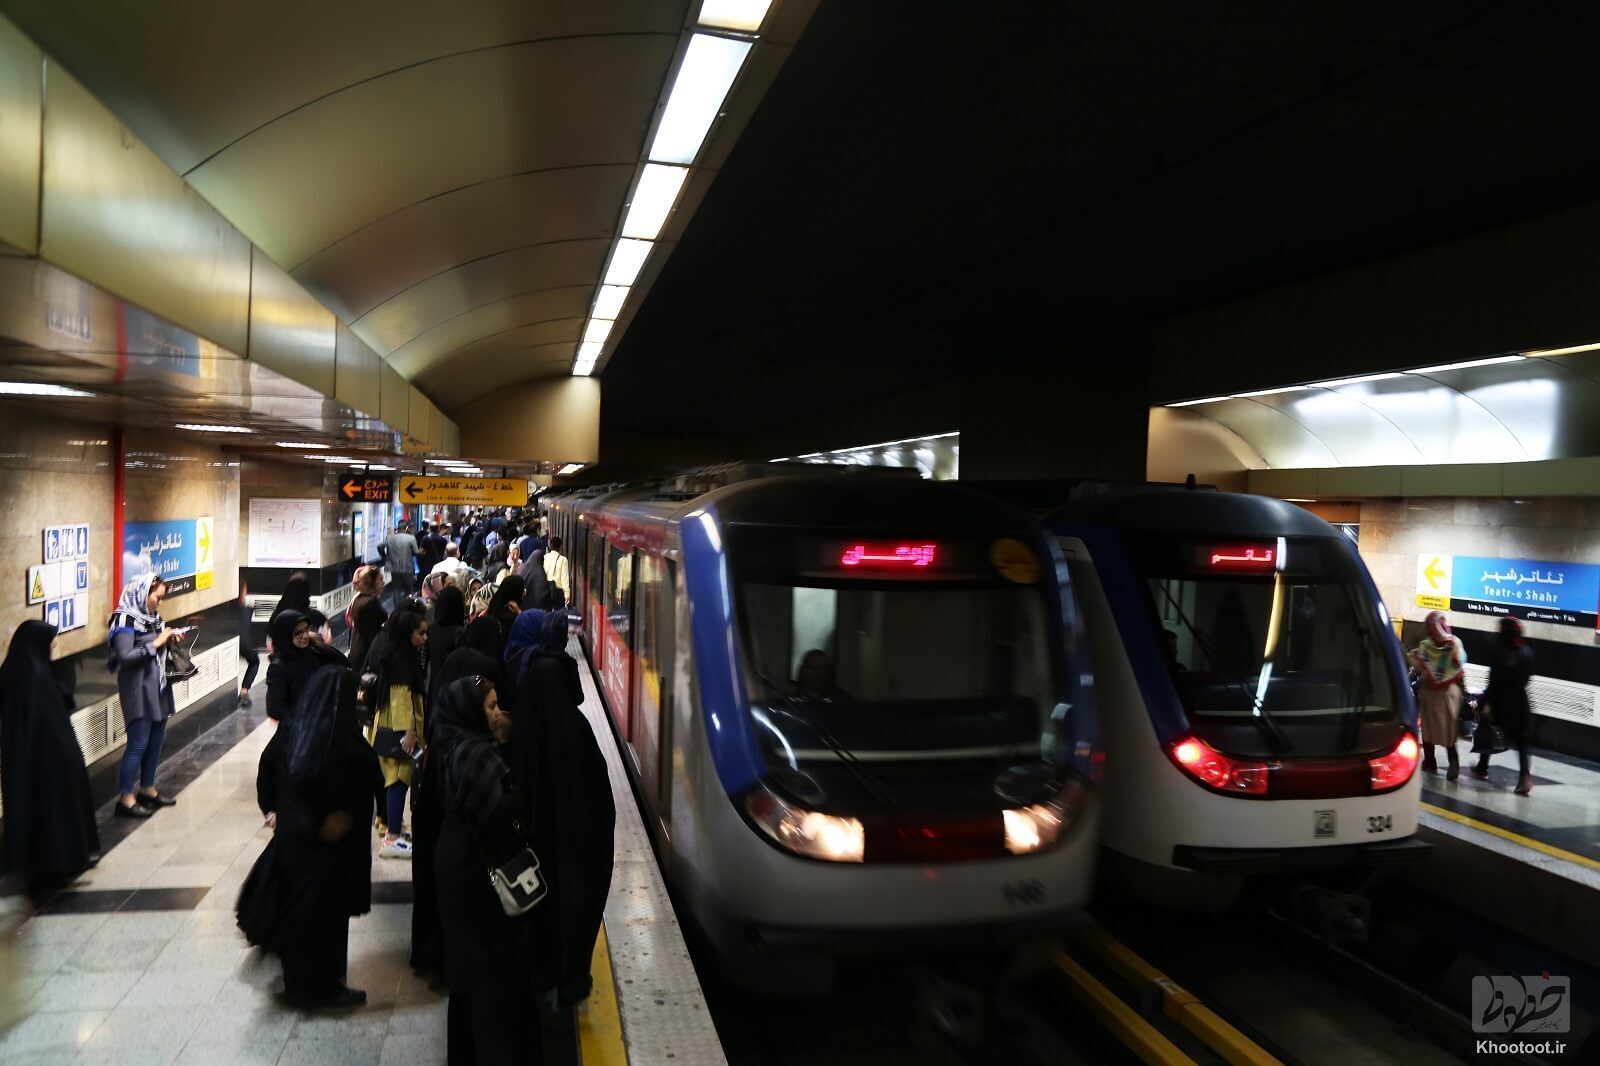 کمبود 1500دستگاه واگن مترو در حمل نقل عمومی / دولت باید برای تهیه واگن های مترو سریع اقدام کند